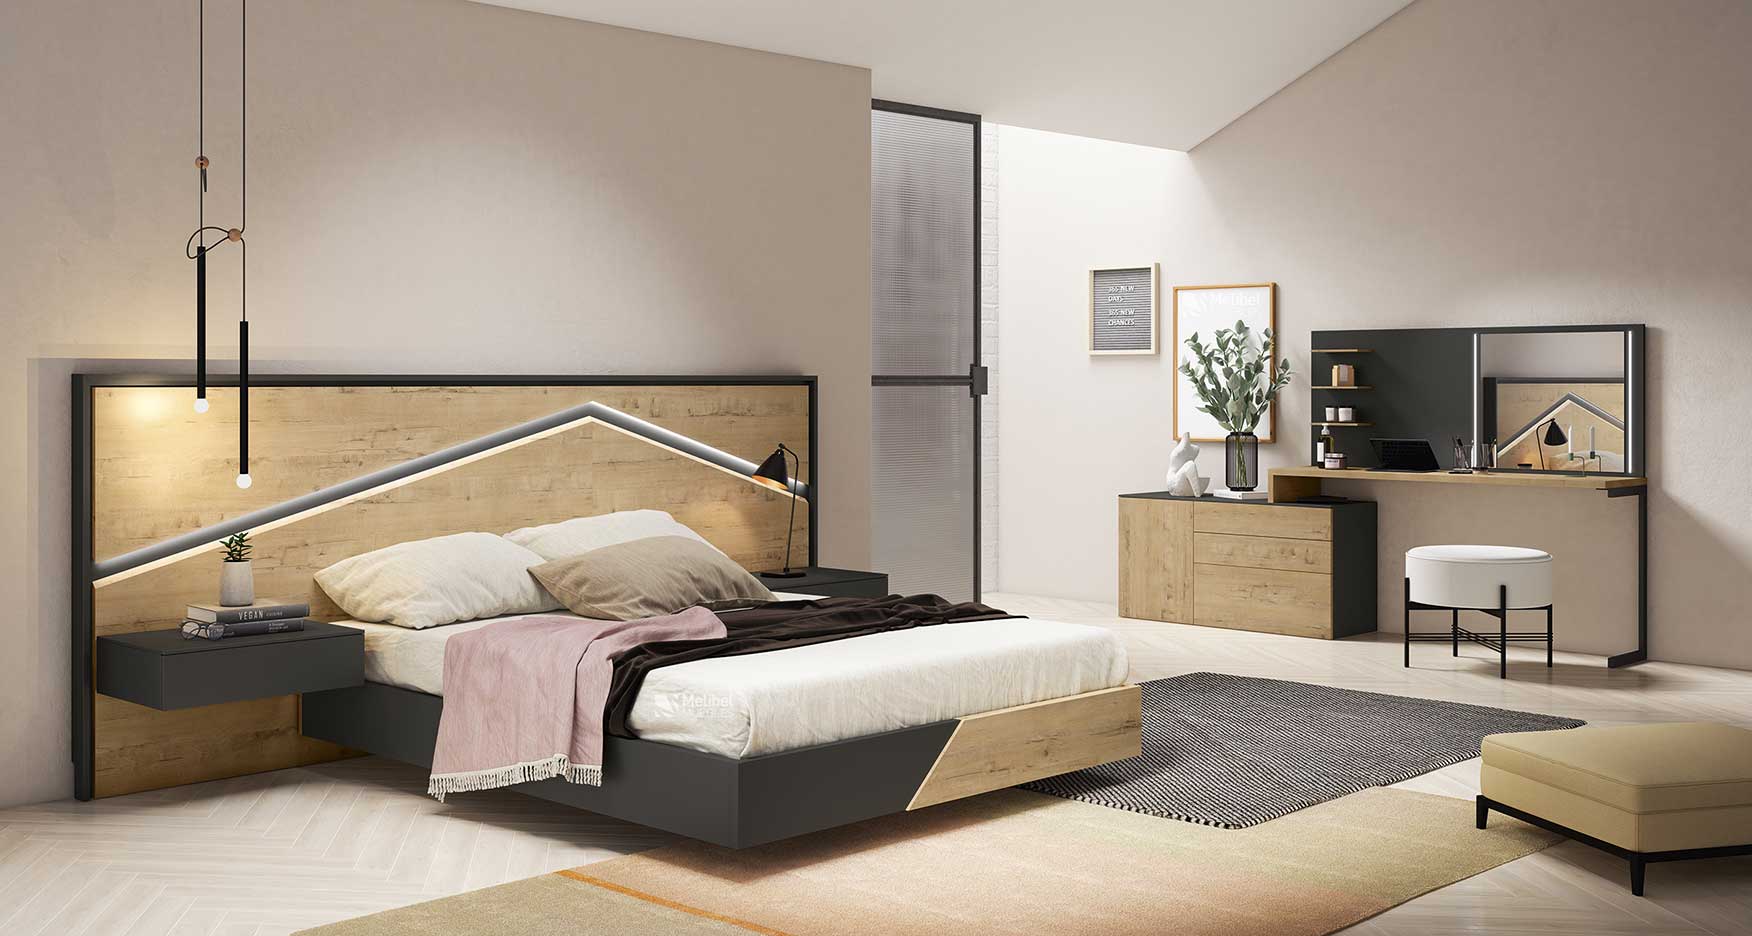 Dormitorios relajantes y adaptados a ti